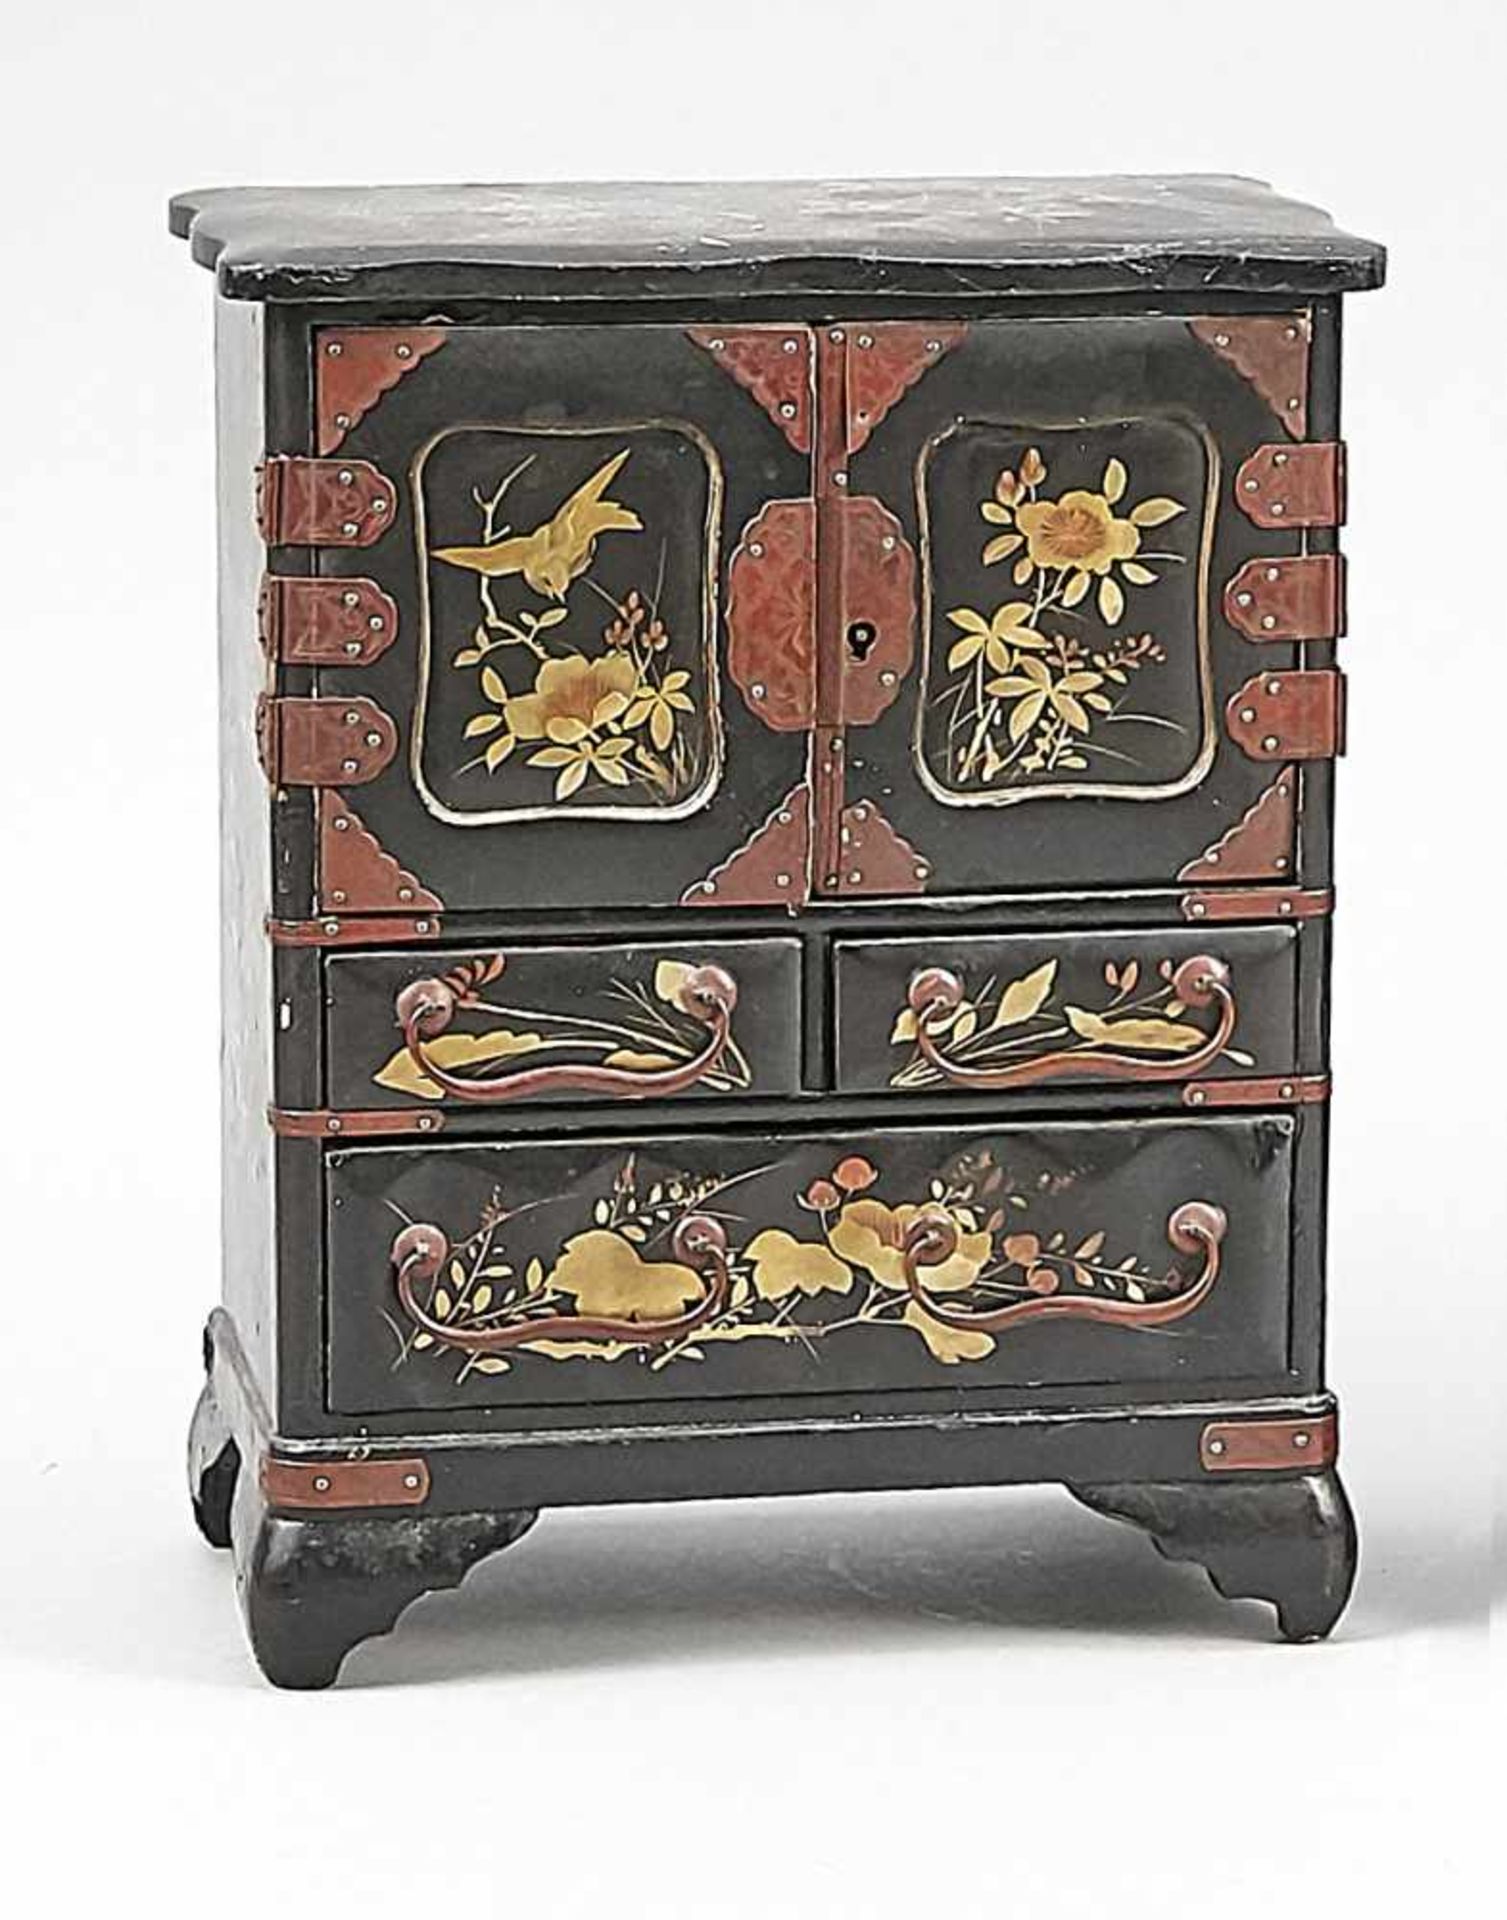 Miniatur-Schmuckkommode, China, um 1900. Schwarzer Lack auf Holzkern. 2 Türen und 3Schübe.